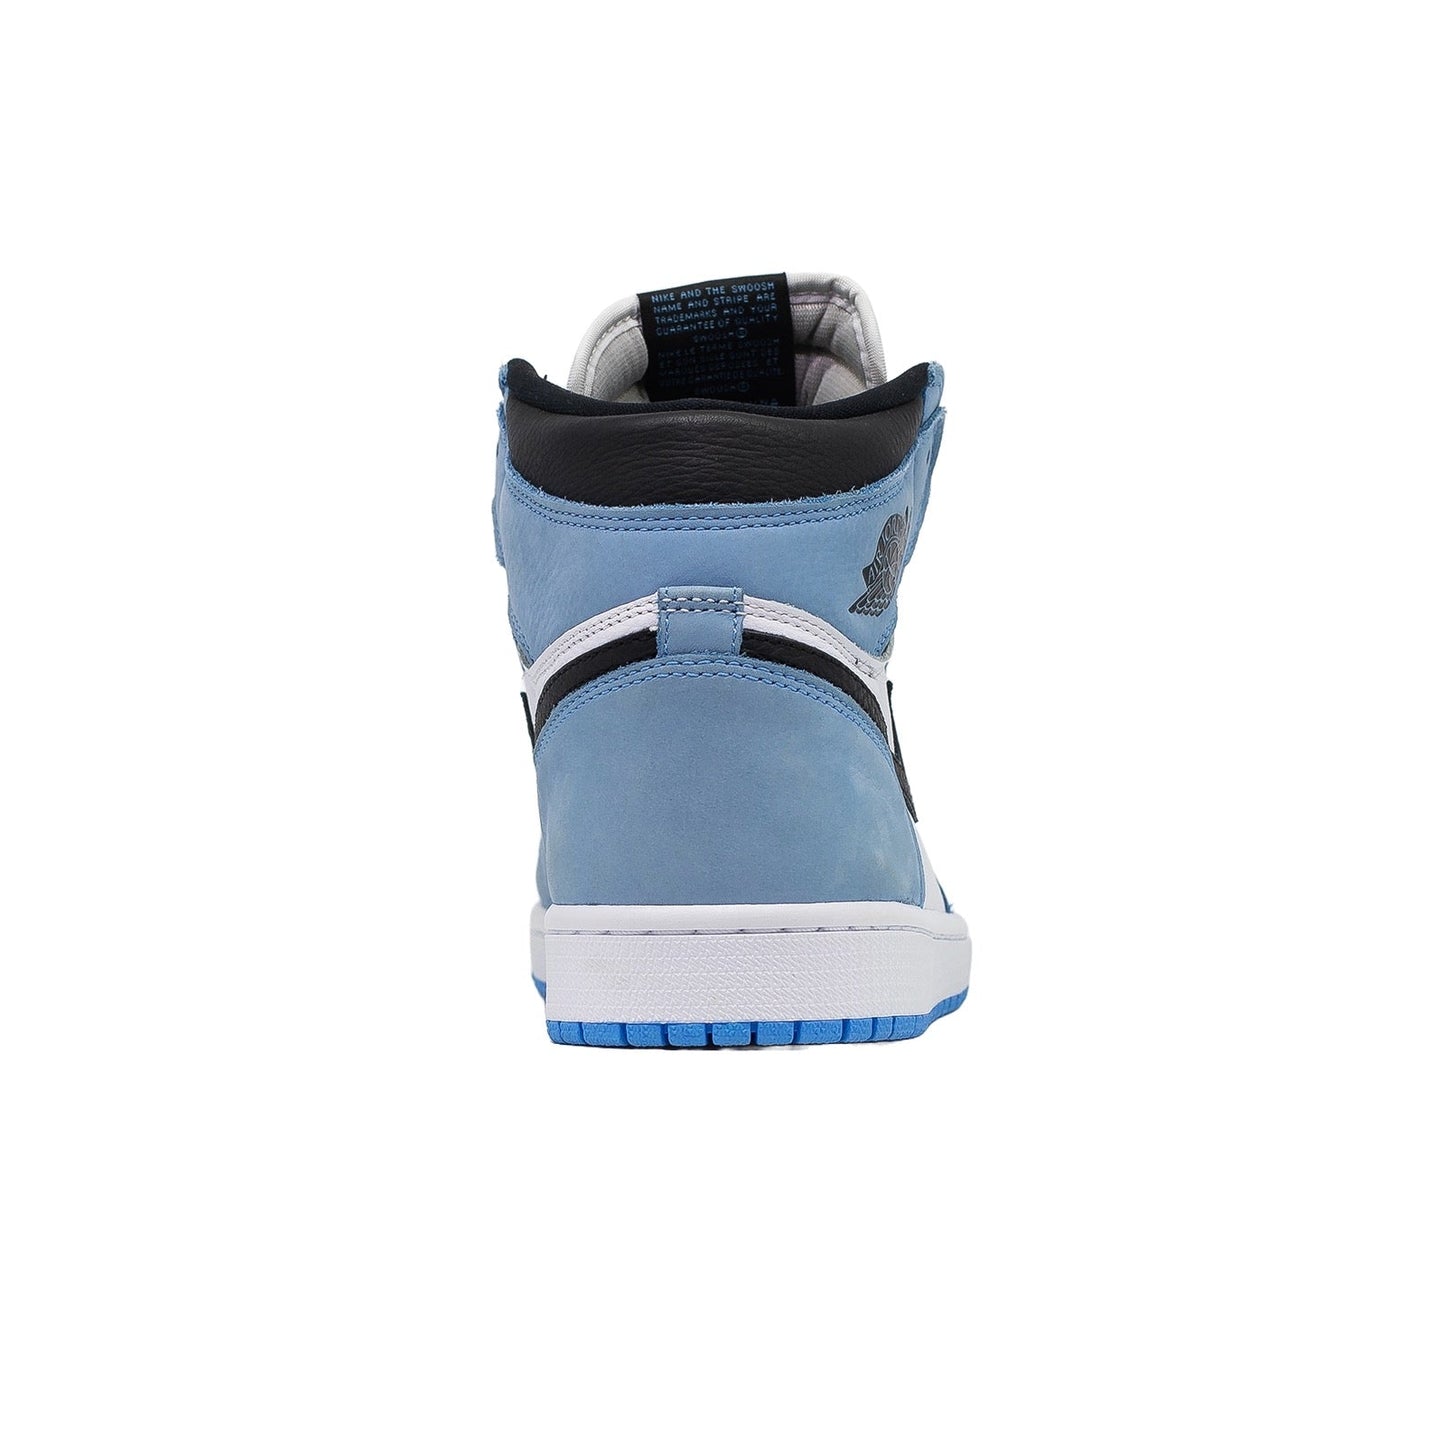 Air Jordan 1 High, University Blue